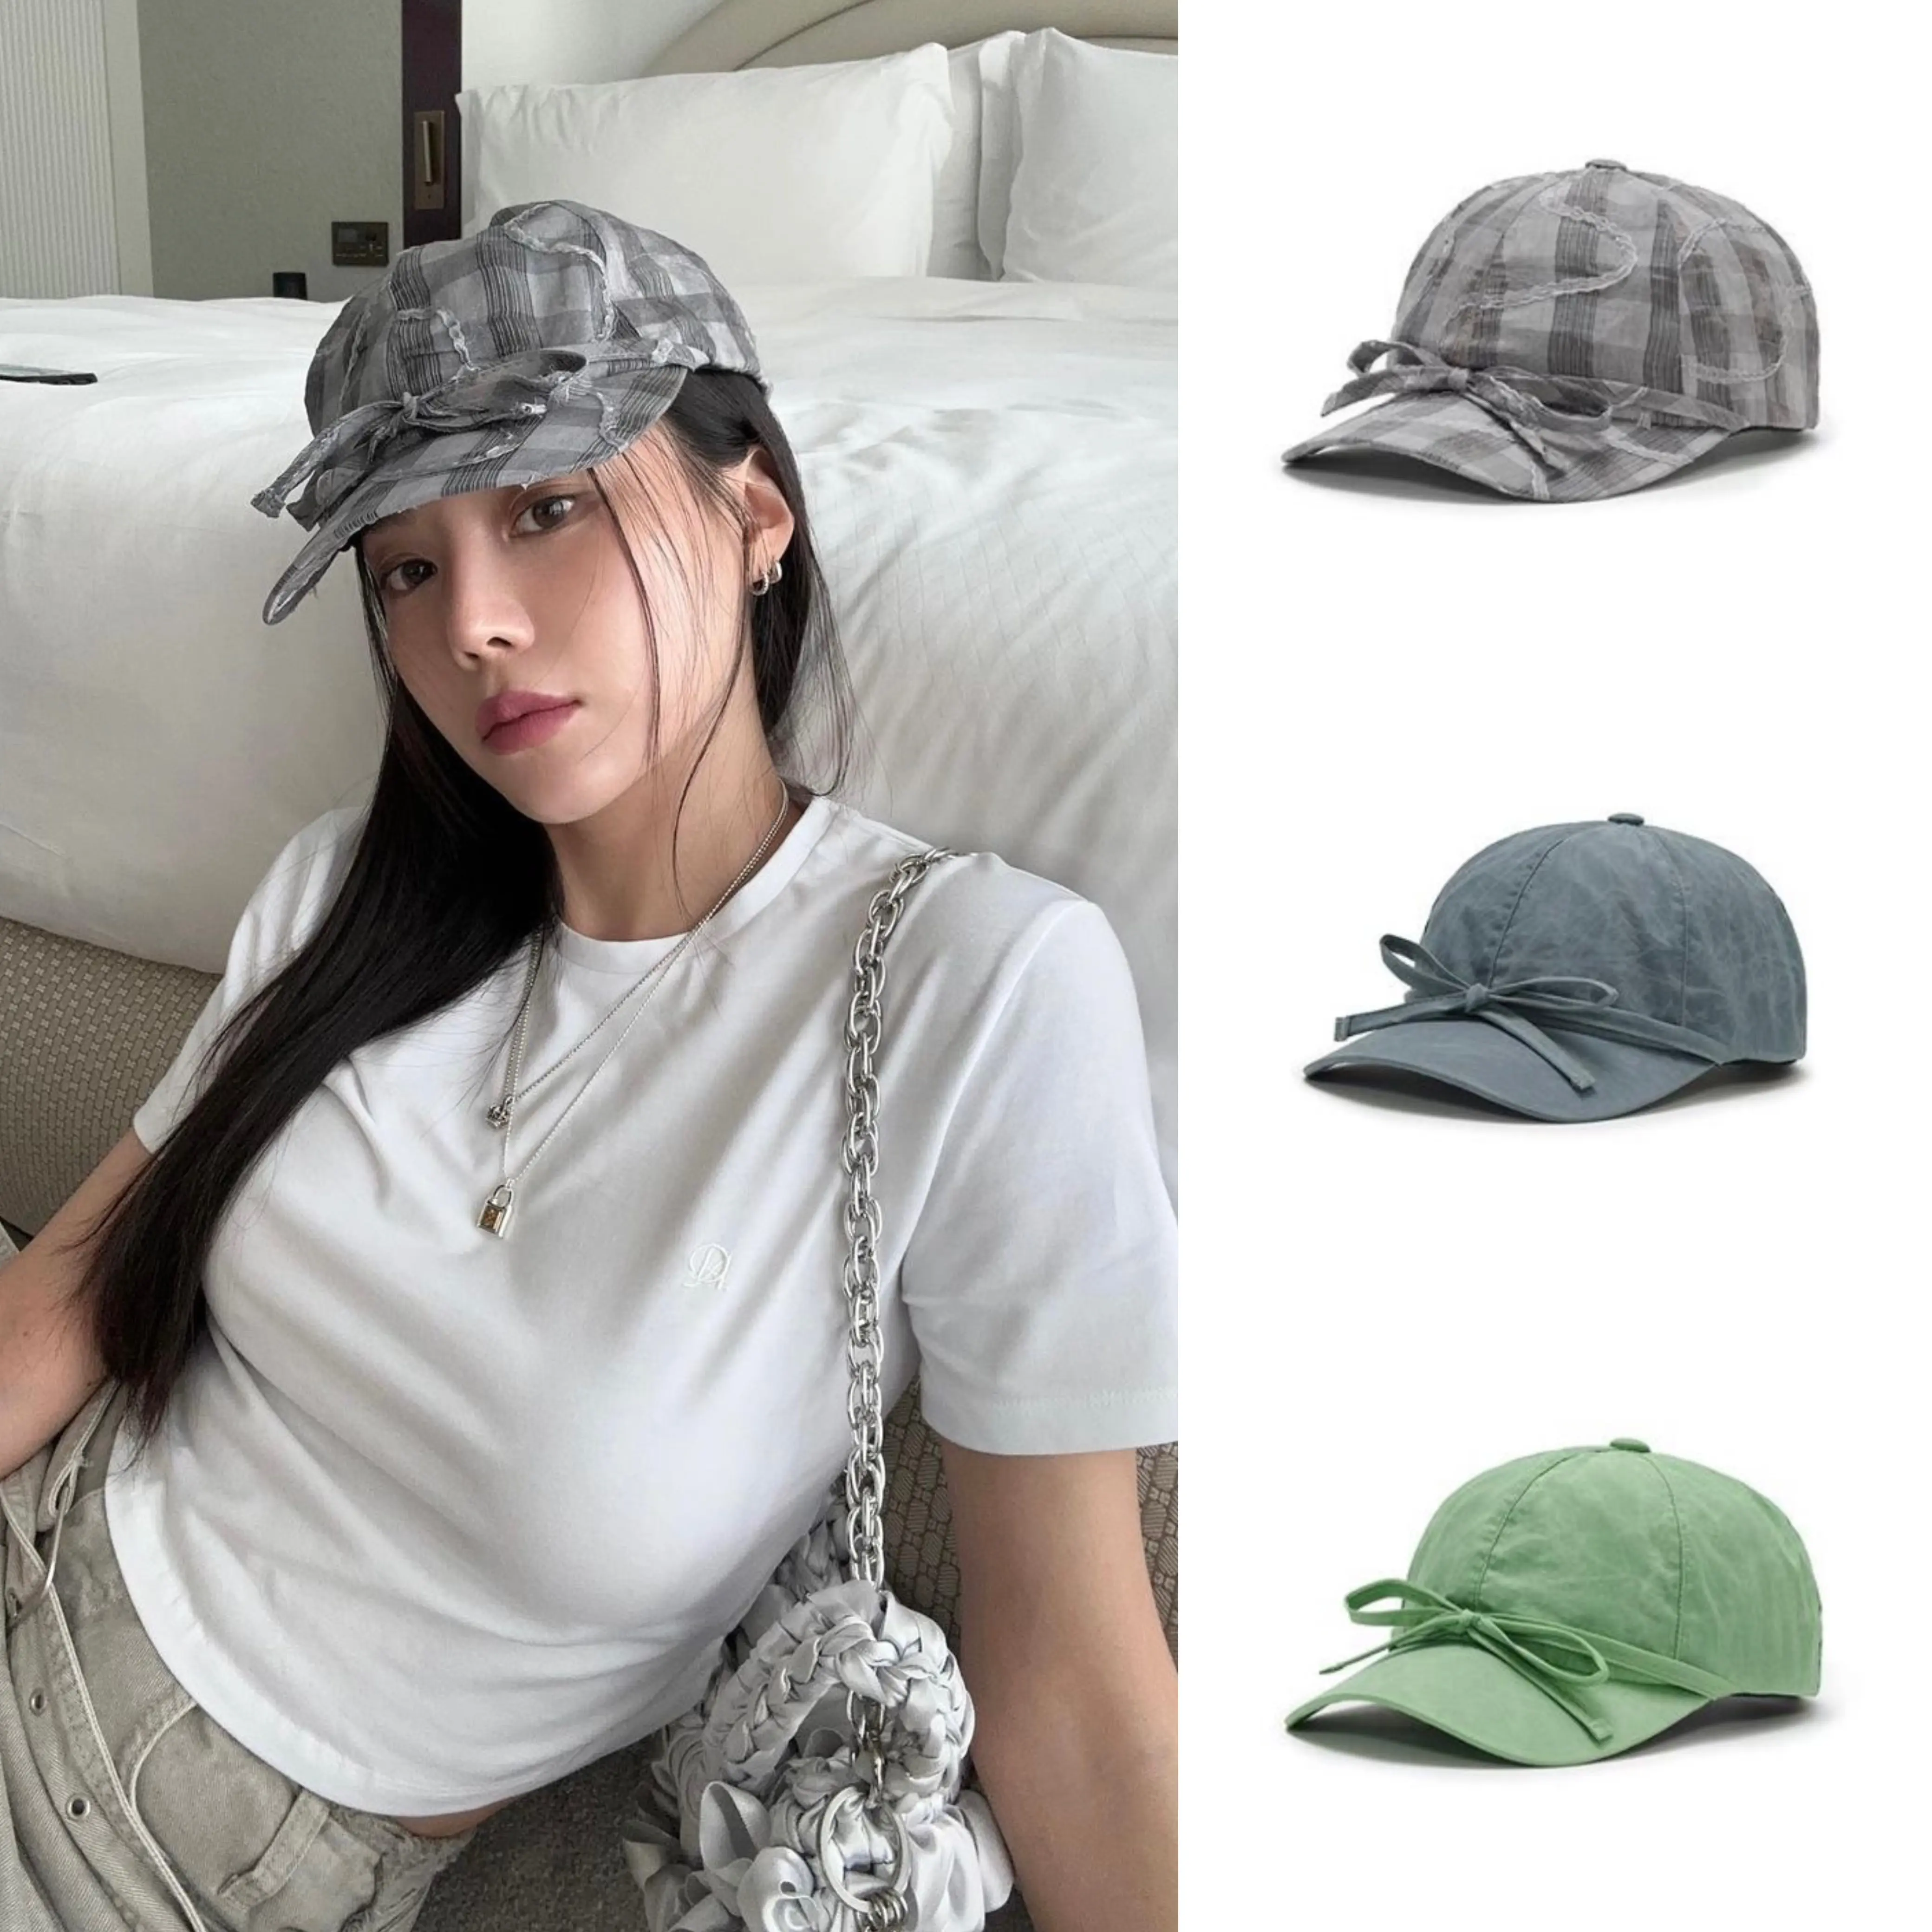 部分現貨●awesome needs 韓國設計師品牌 蝴蝶結可愛棒球帽帽子-Taobao